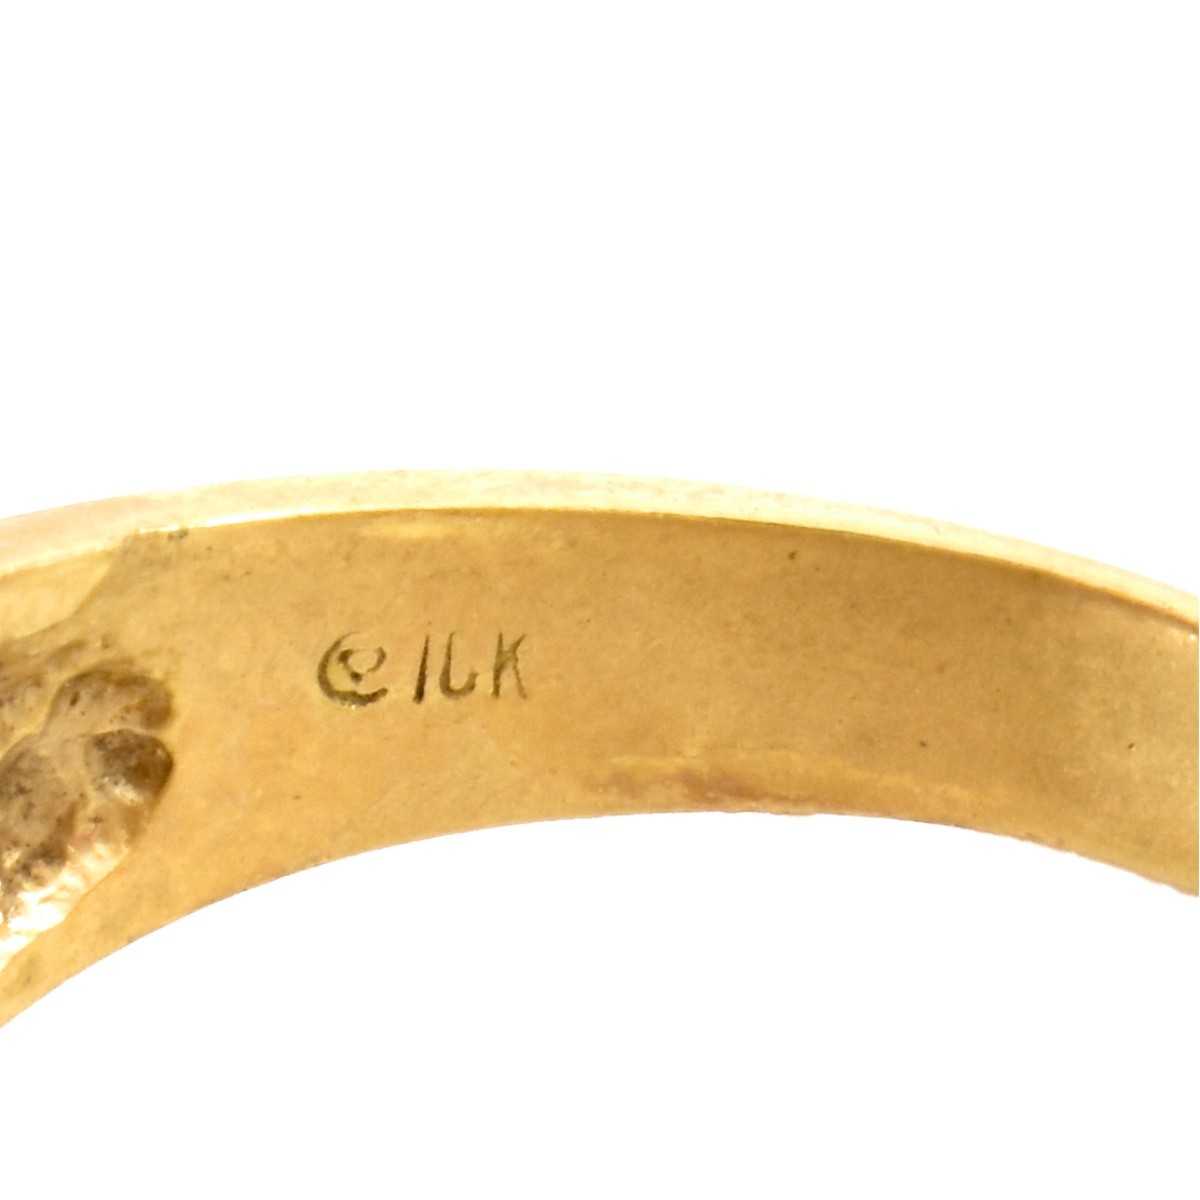 Man's Vintage 10K Gold Ring